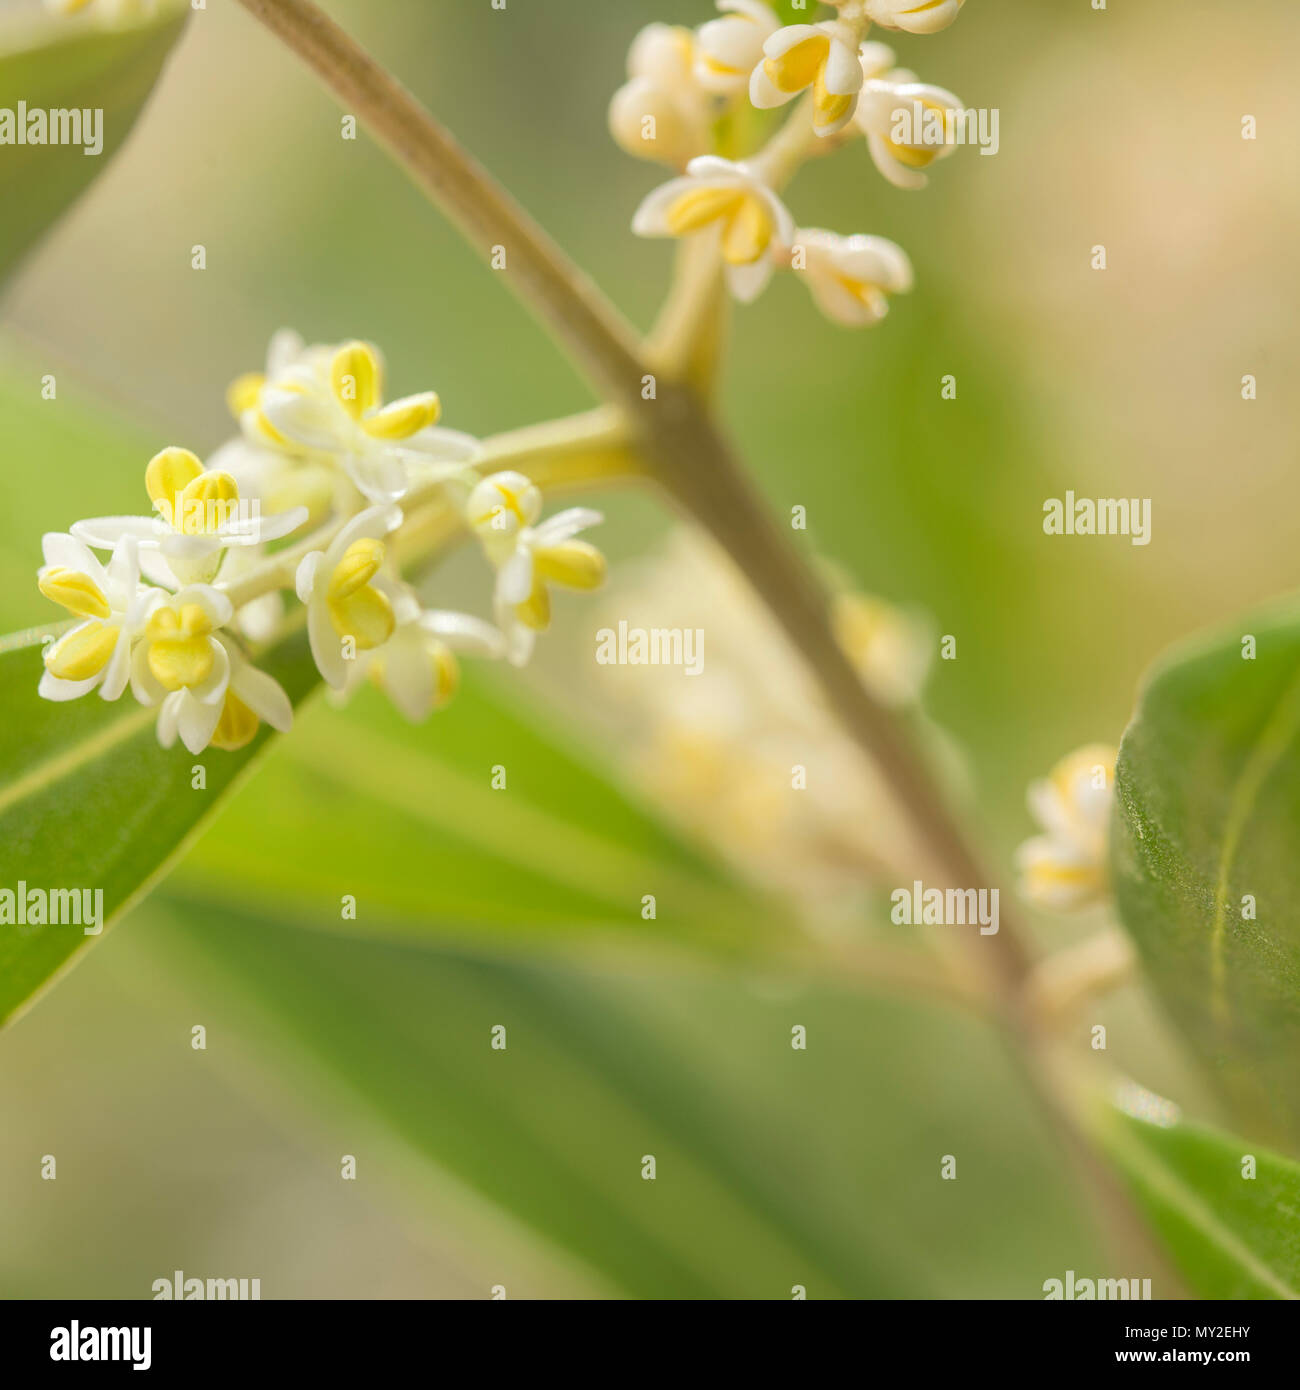 Immagine quadrata di un ulivo ramo e il dettaglio dei fiori con foglie mosse in background. Foto Stock